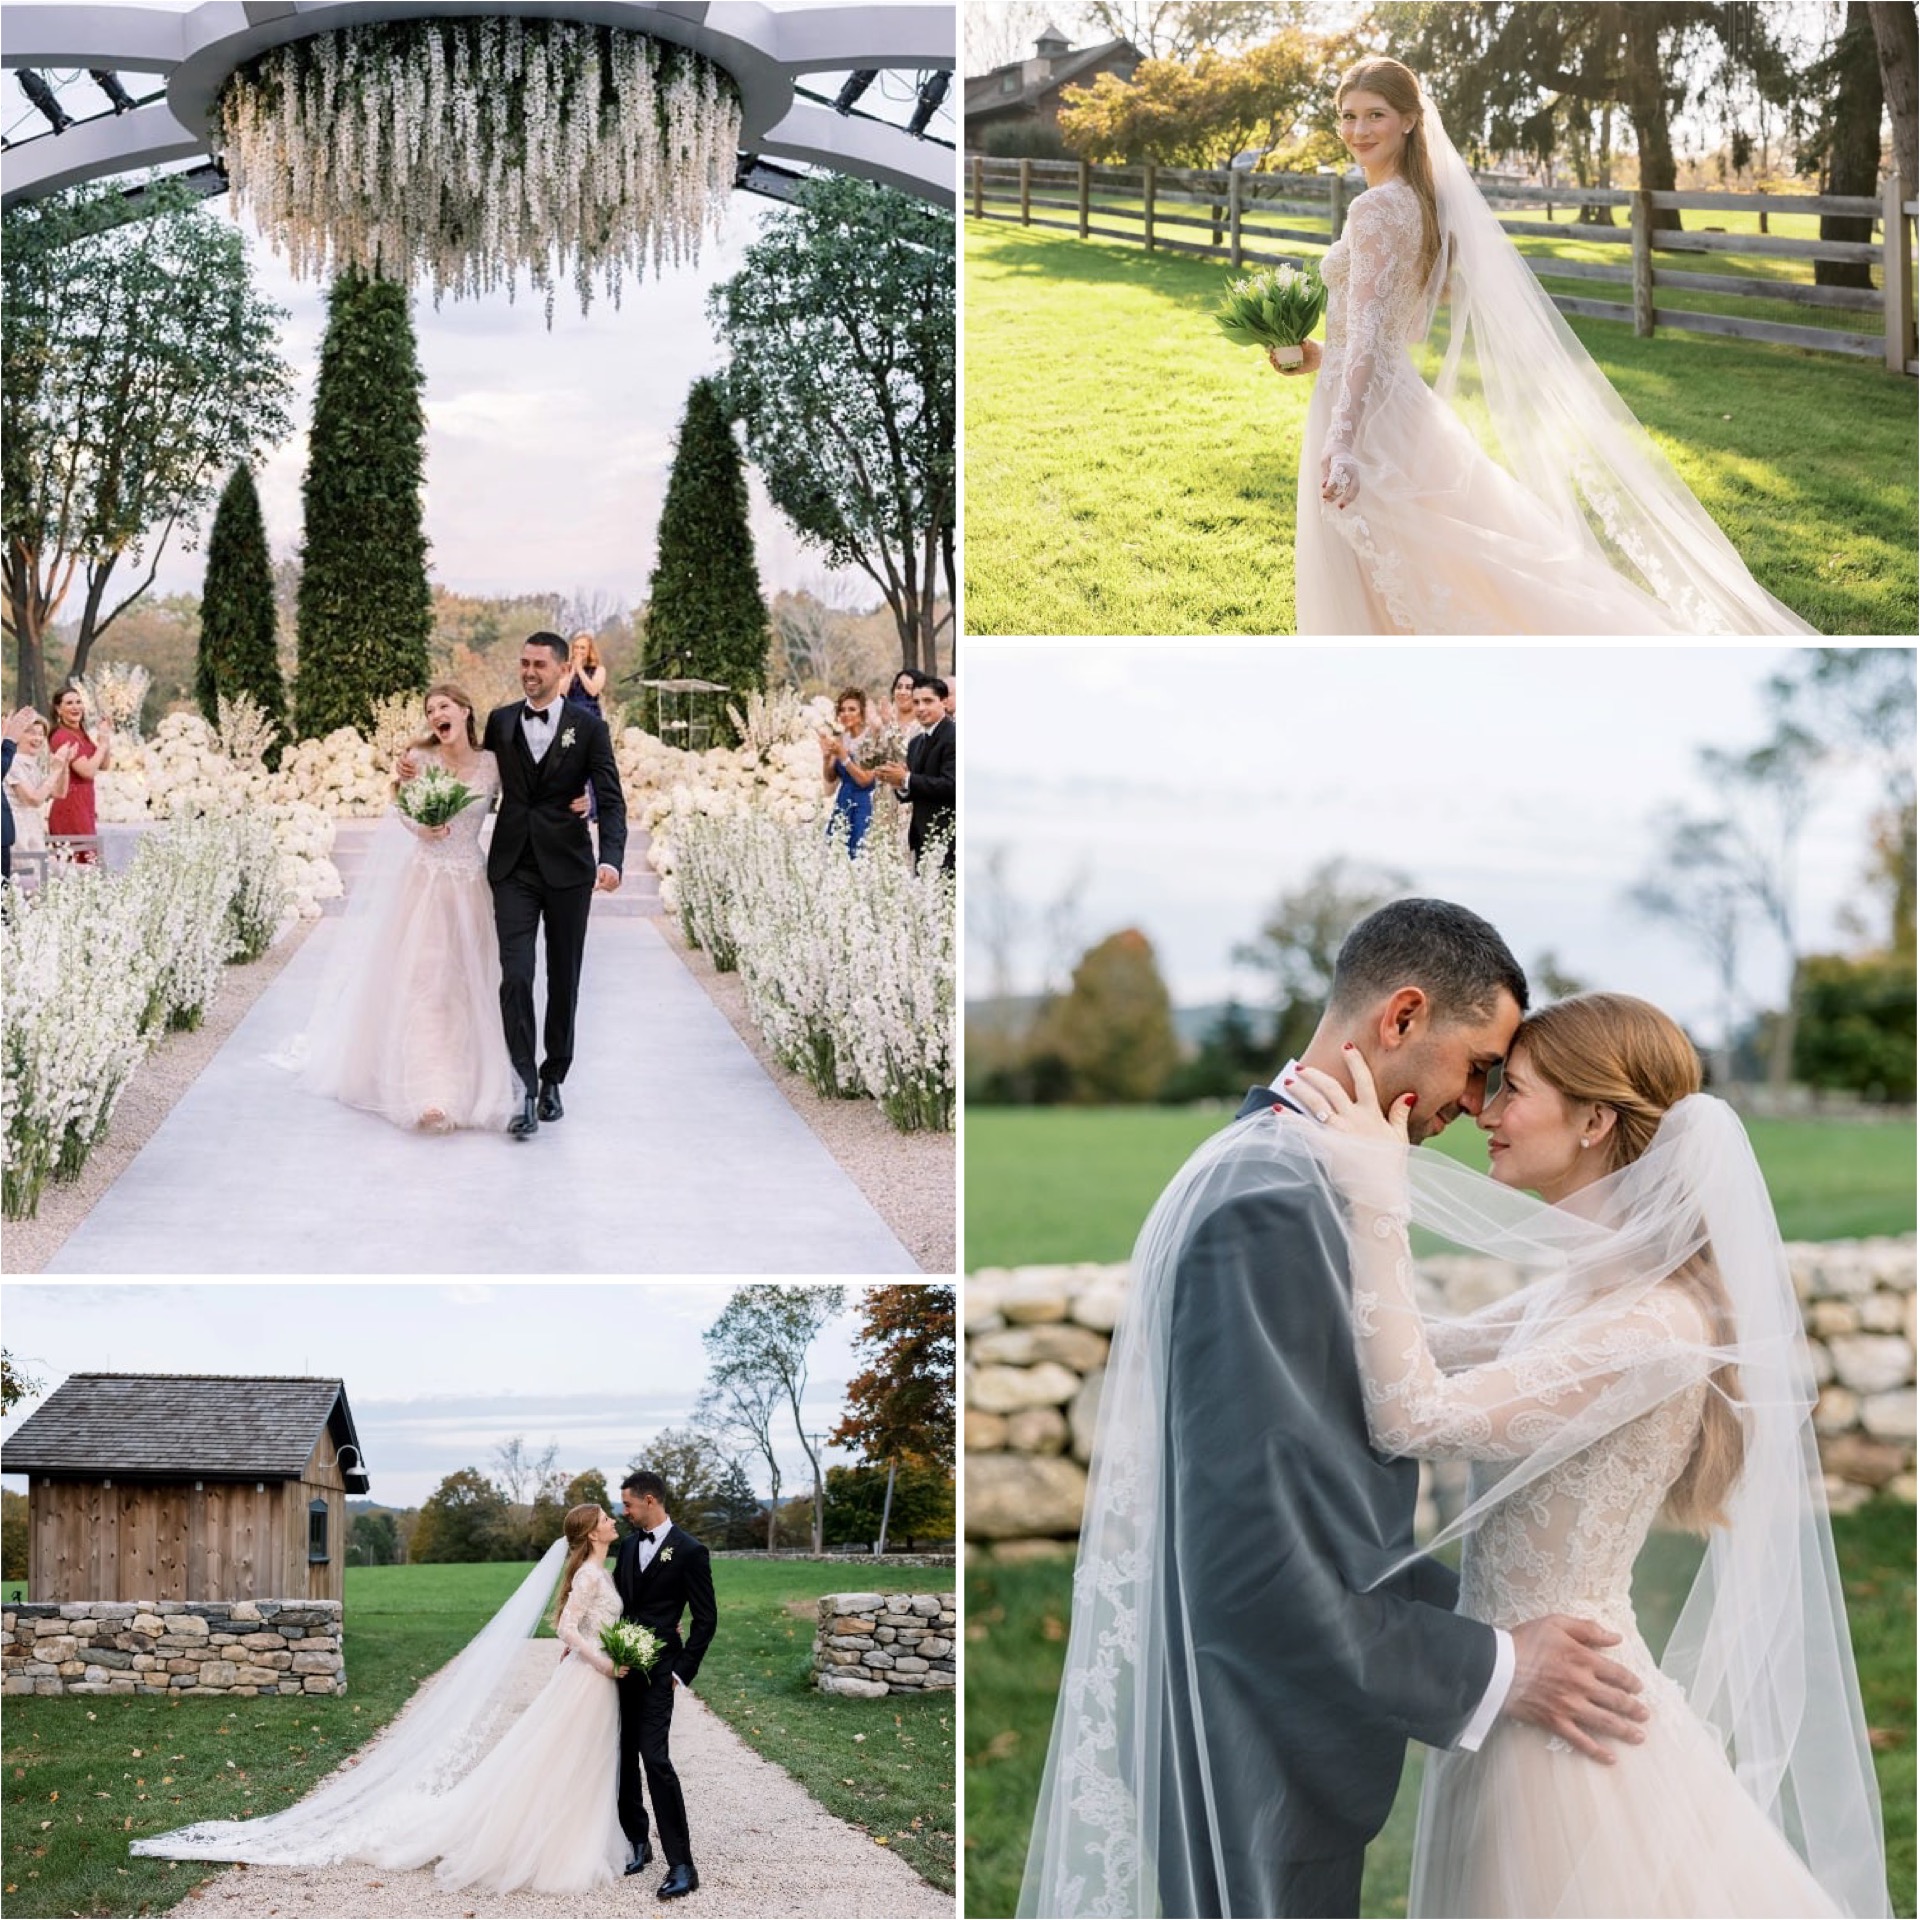 Vogue опубликовал снимки со свадьбы дочери Билла Гейтса - 1 - изображение